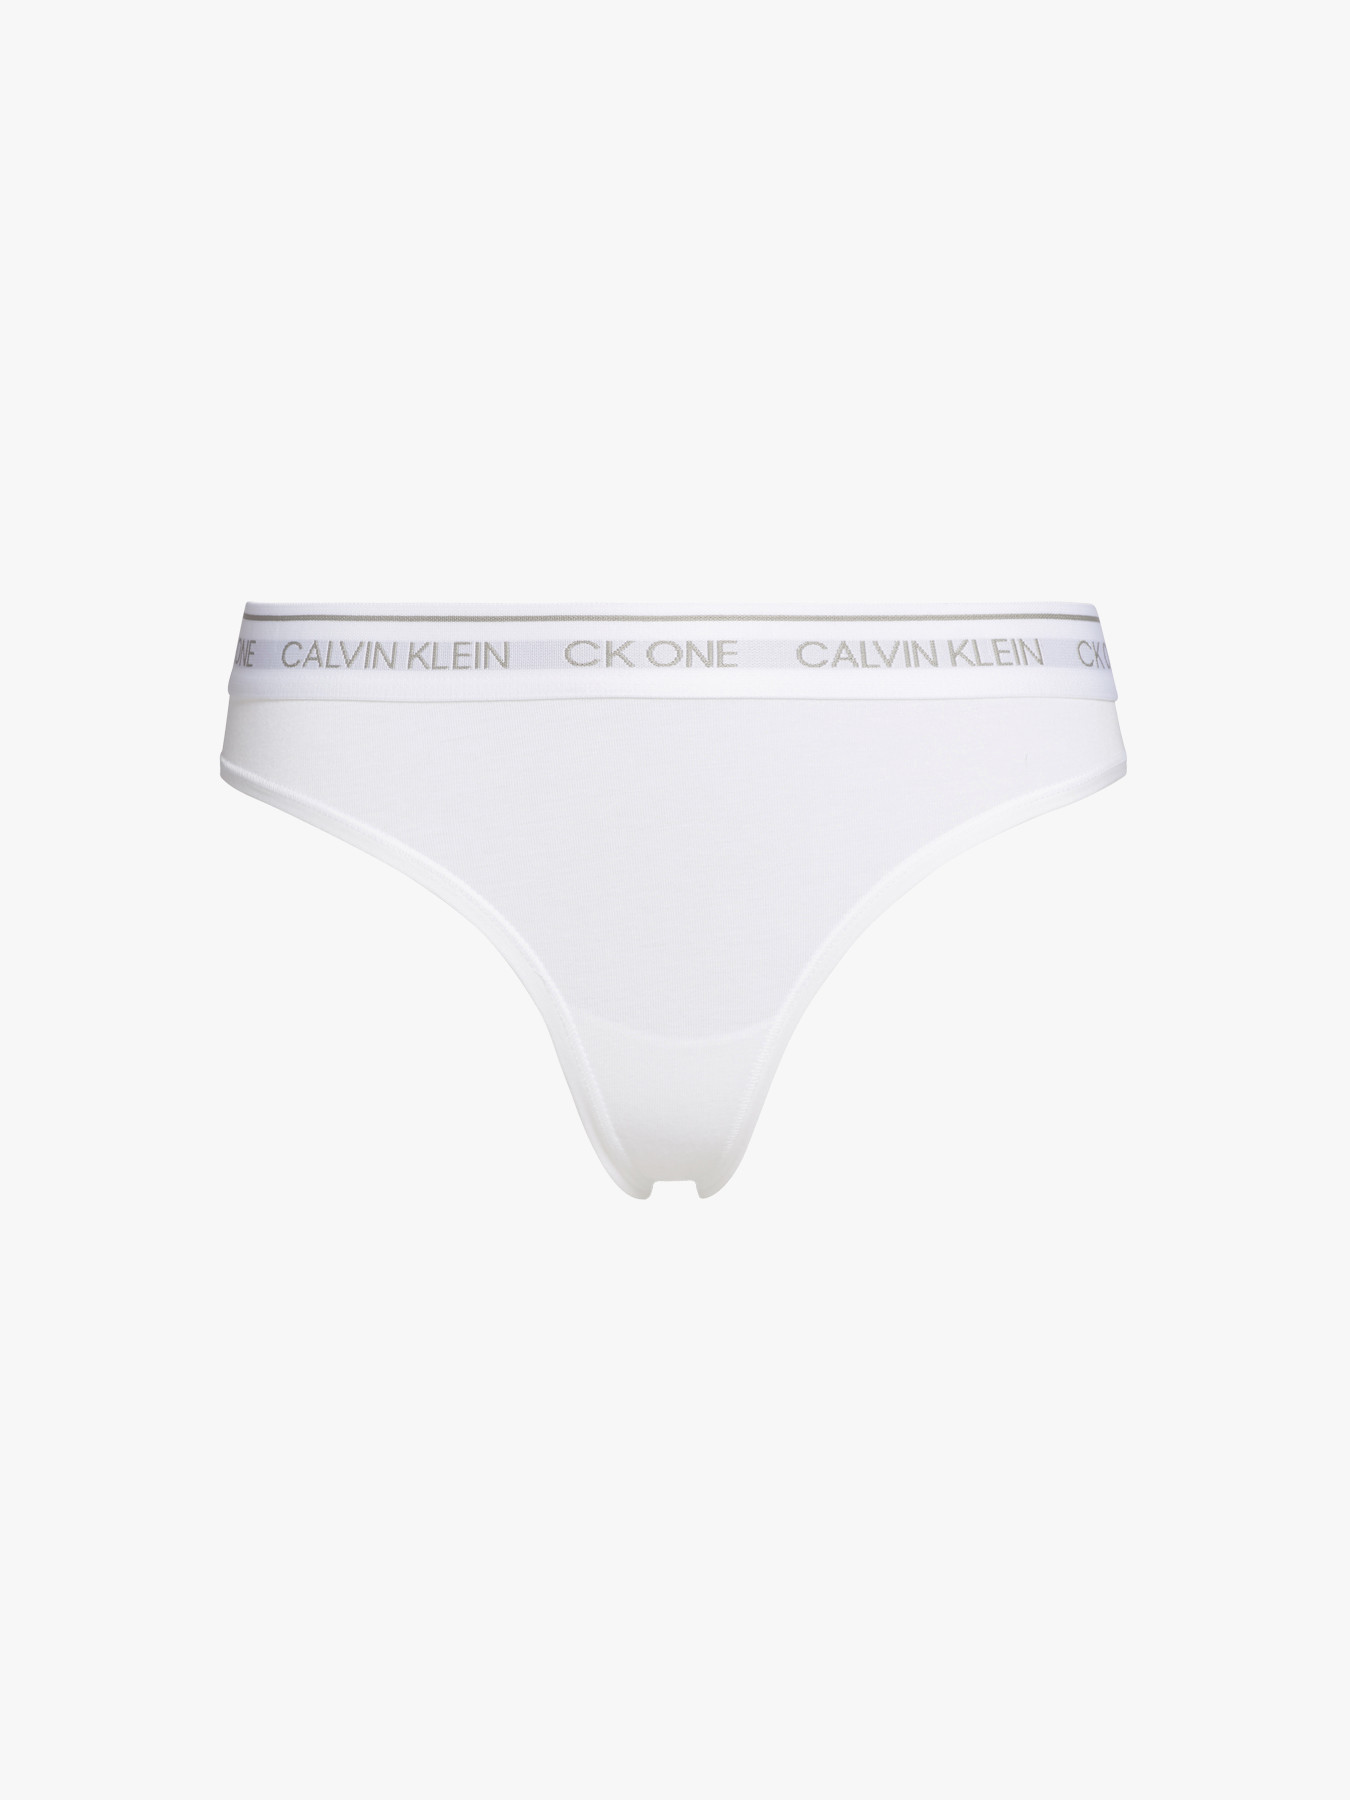 Women's Calvin Klein Underwear CK One Cotton Thong | Fenwick